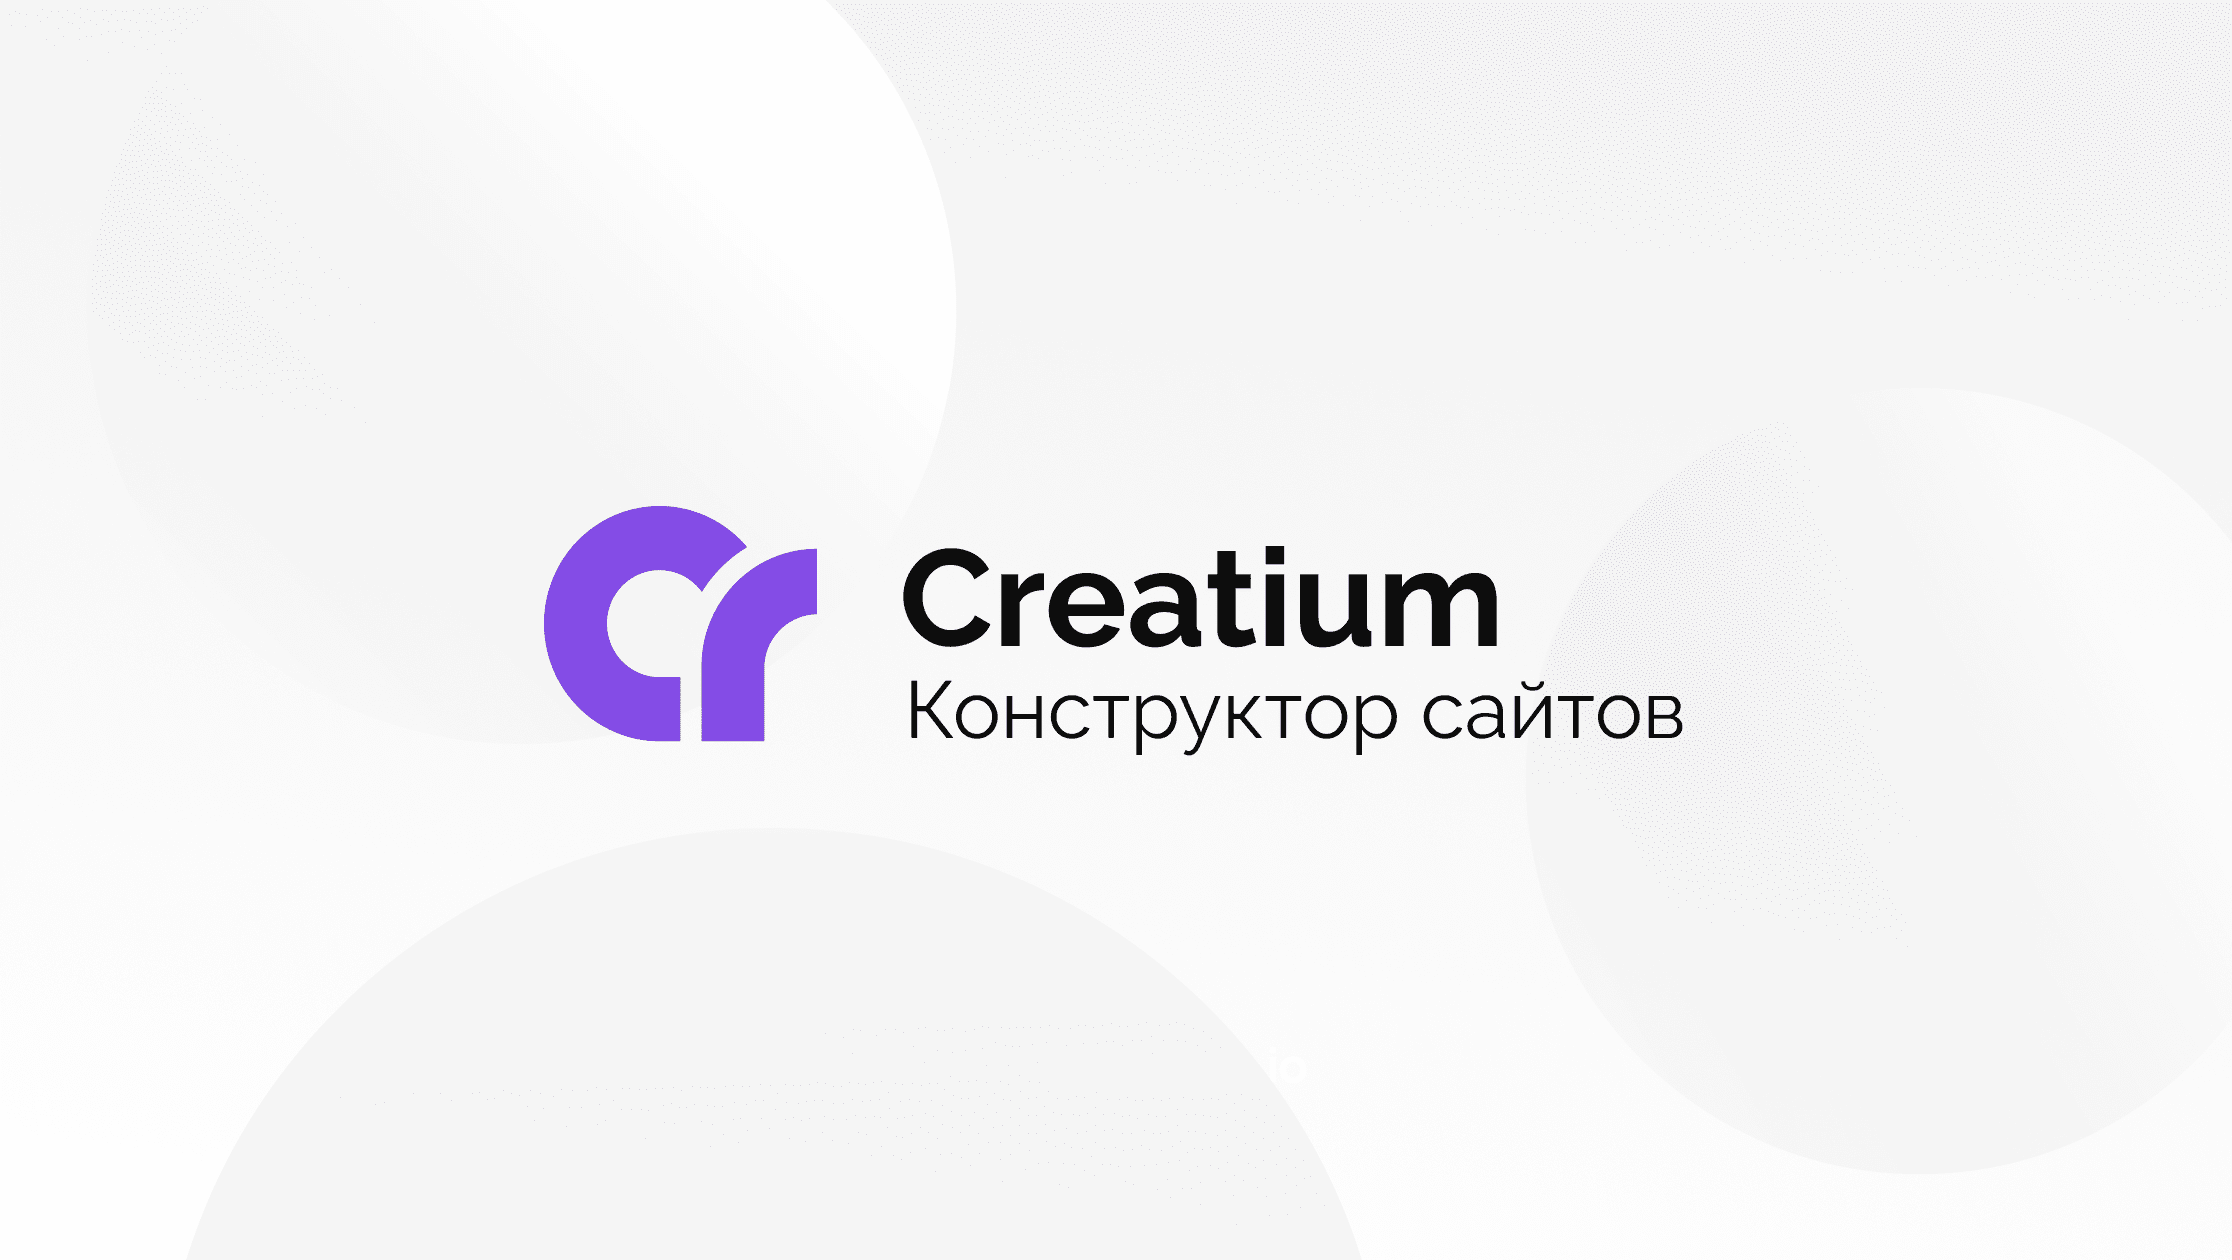 Creatium site. Конструктор сайта CRAFTUM. Логотип Creatium. Логотипы конструкторов сайтов. Конструктор сайтов лого.